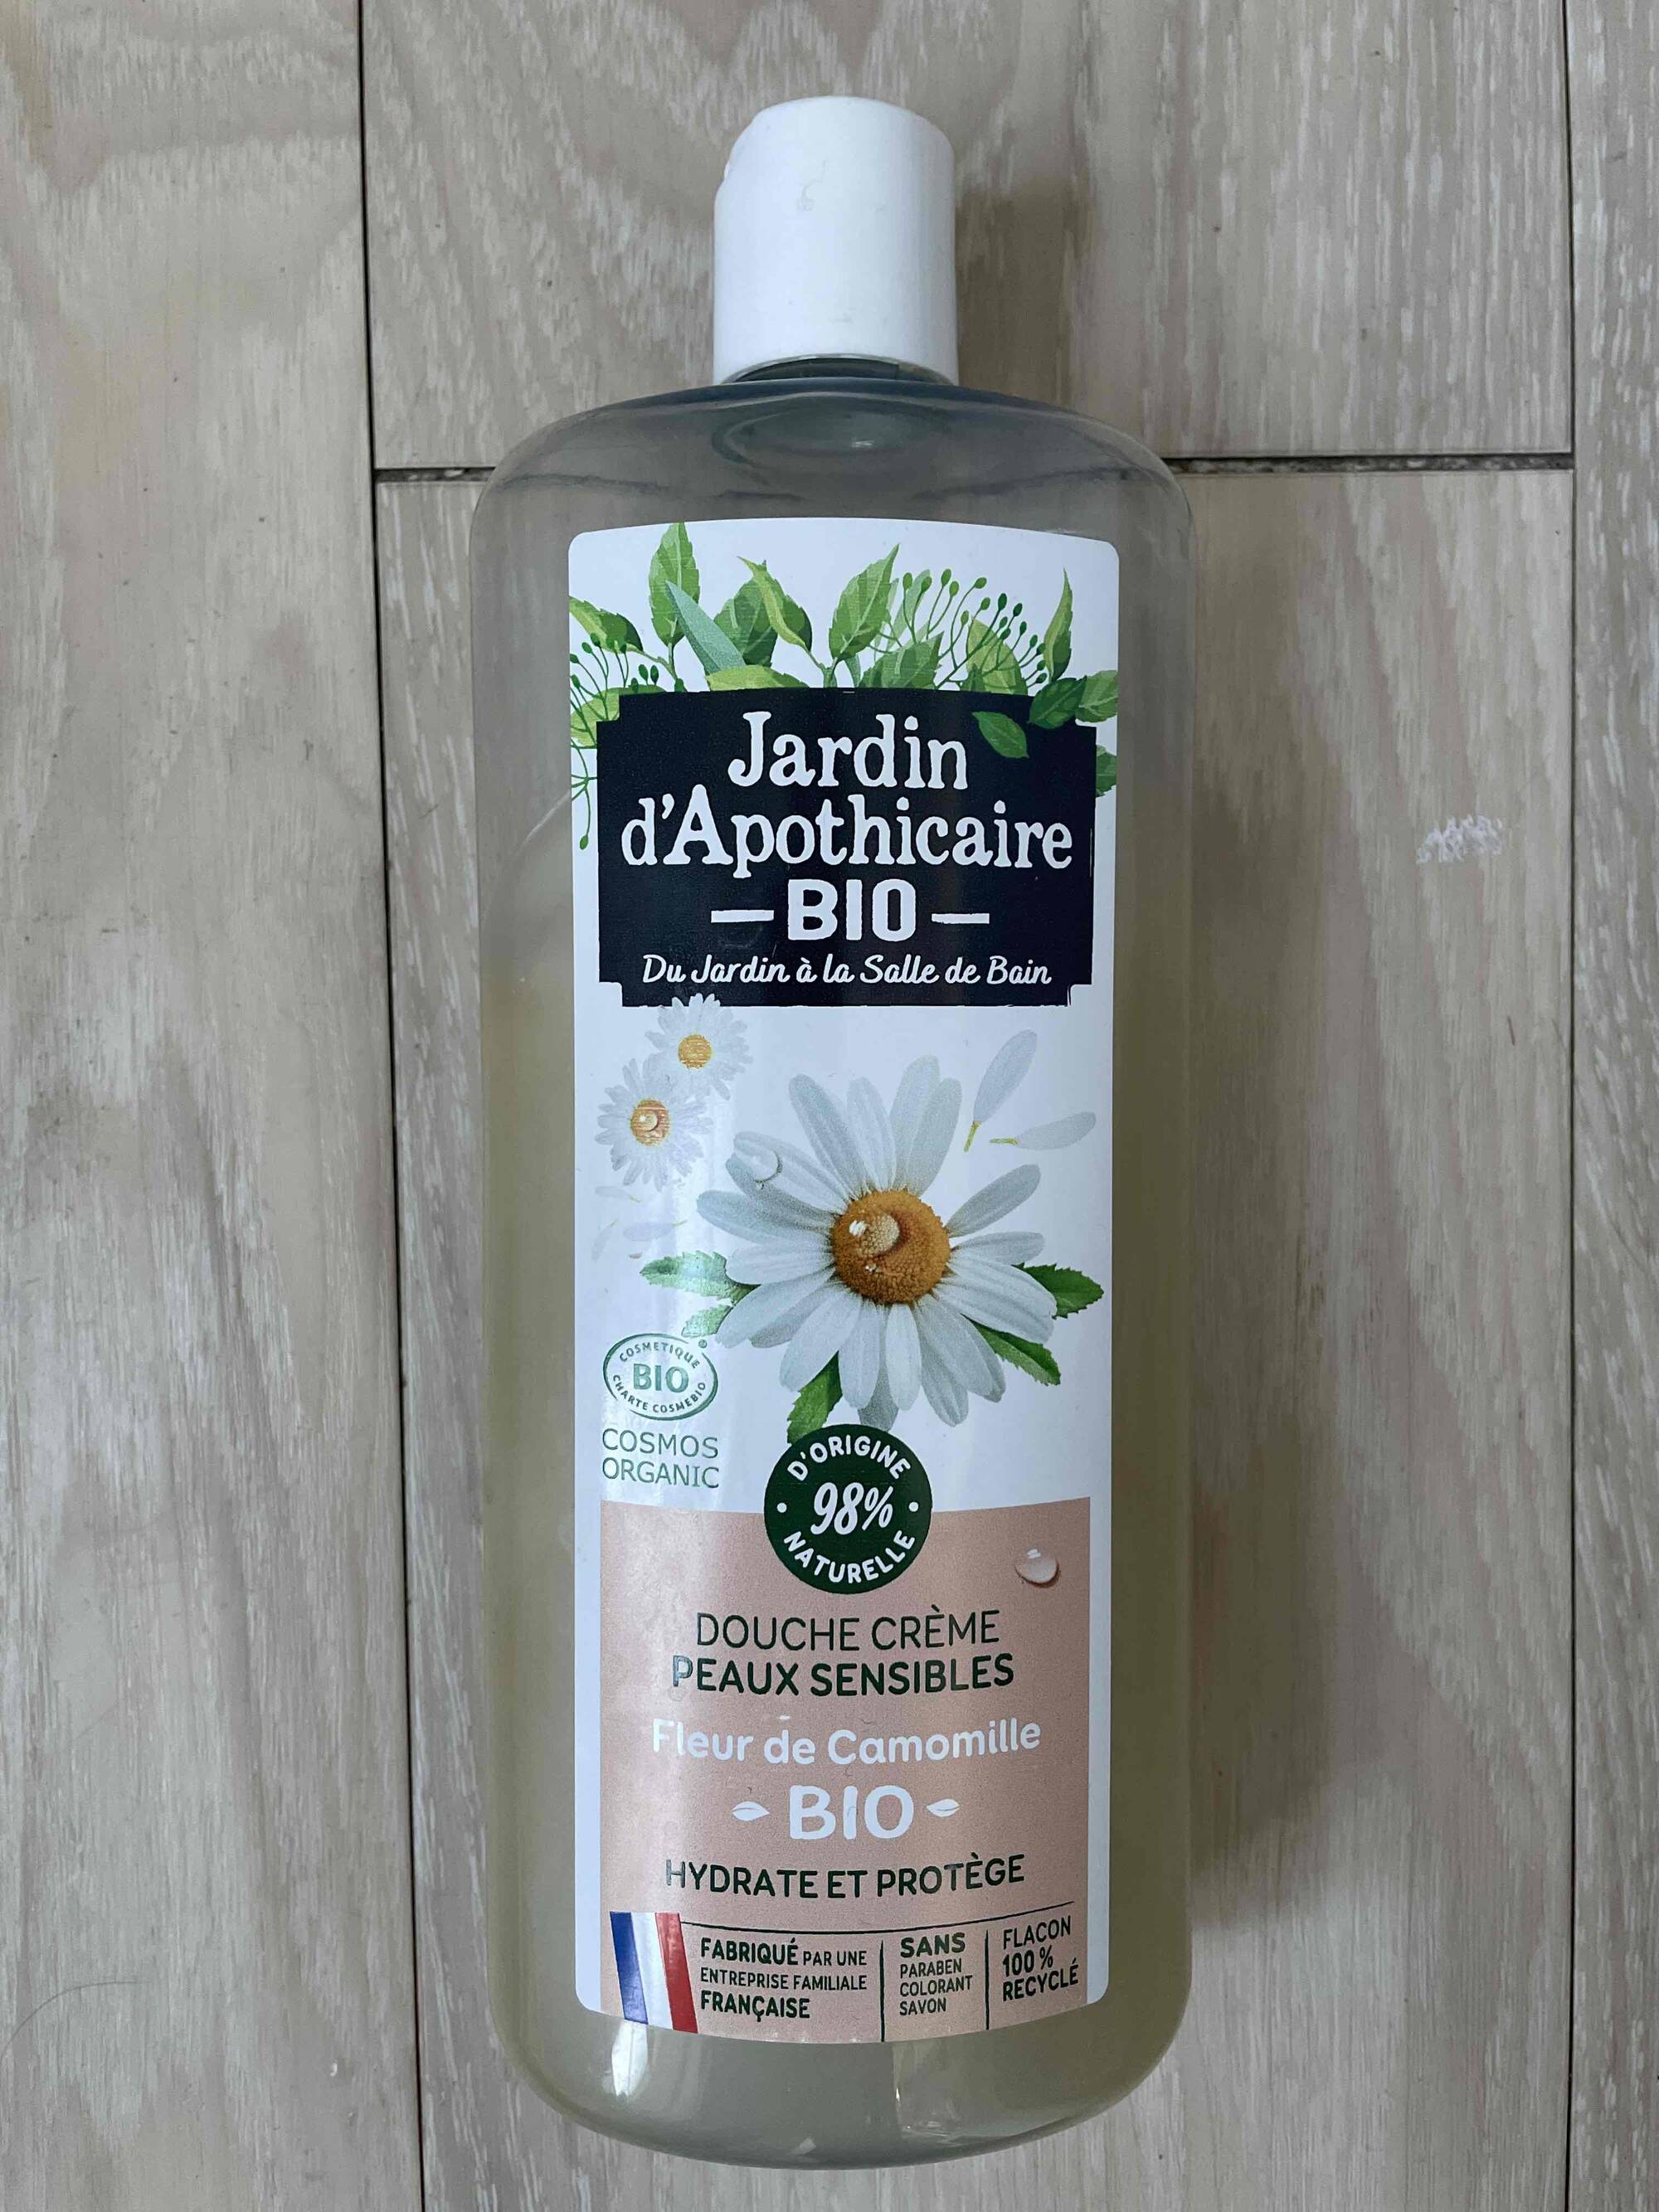 JARDIN D'APOTHICAIRE BIO - Peaux sensibles - Douche crème fleur de camomille bio